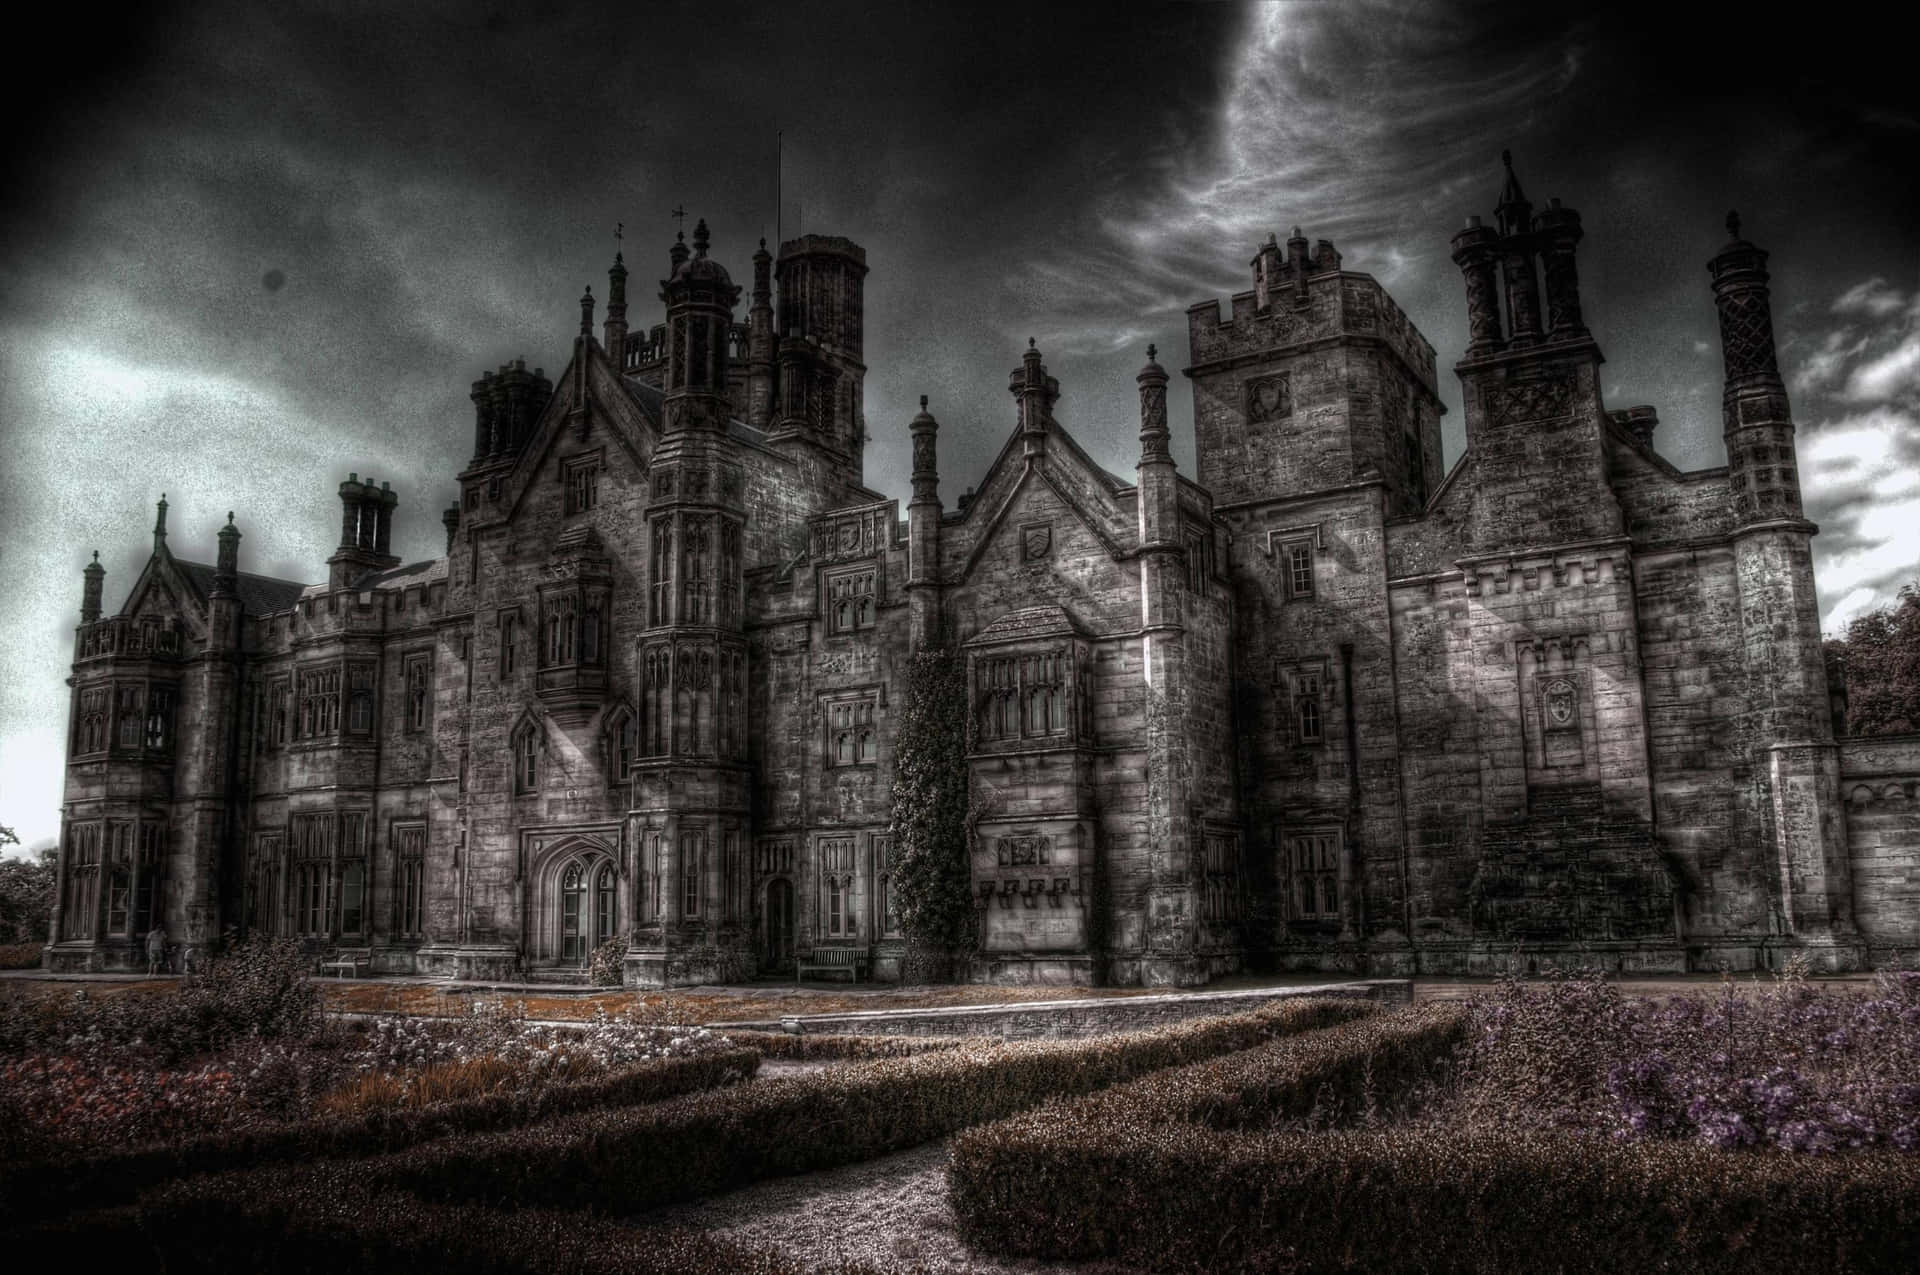 Download Dark Gothic Castle in Moonlight Wallpaper | Wallpapers.com